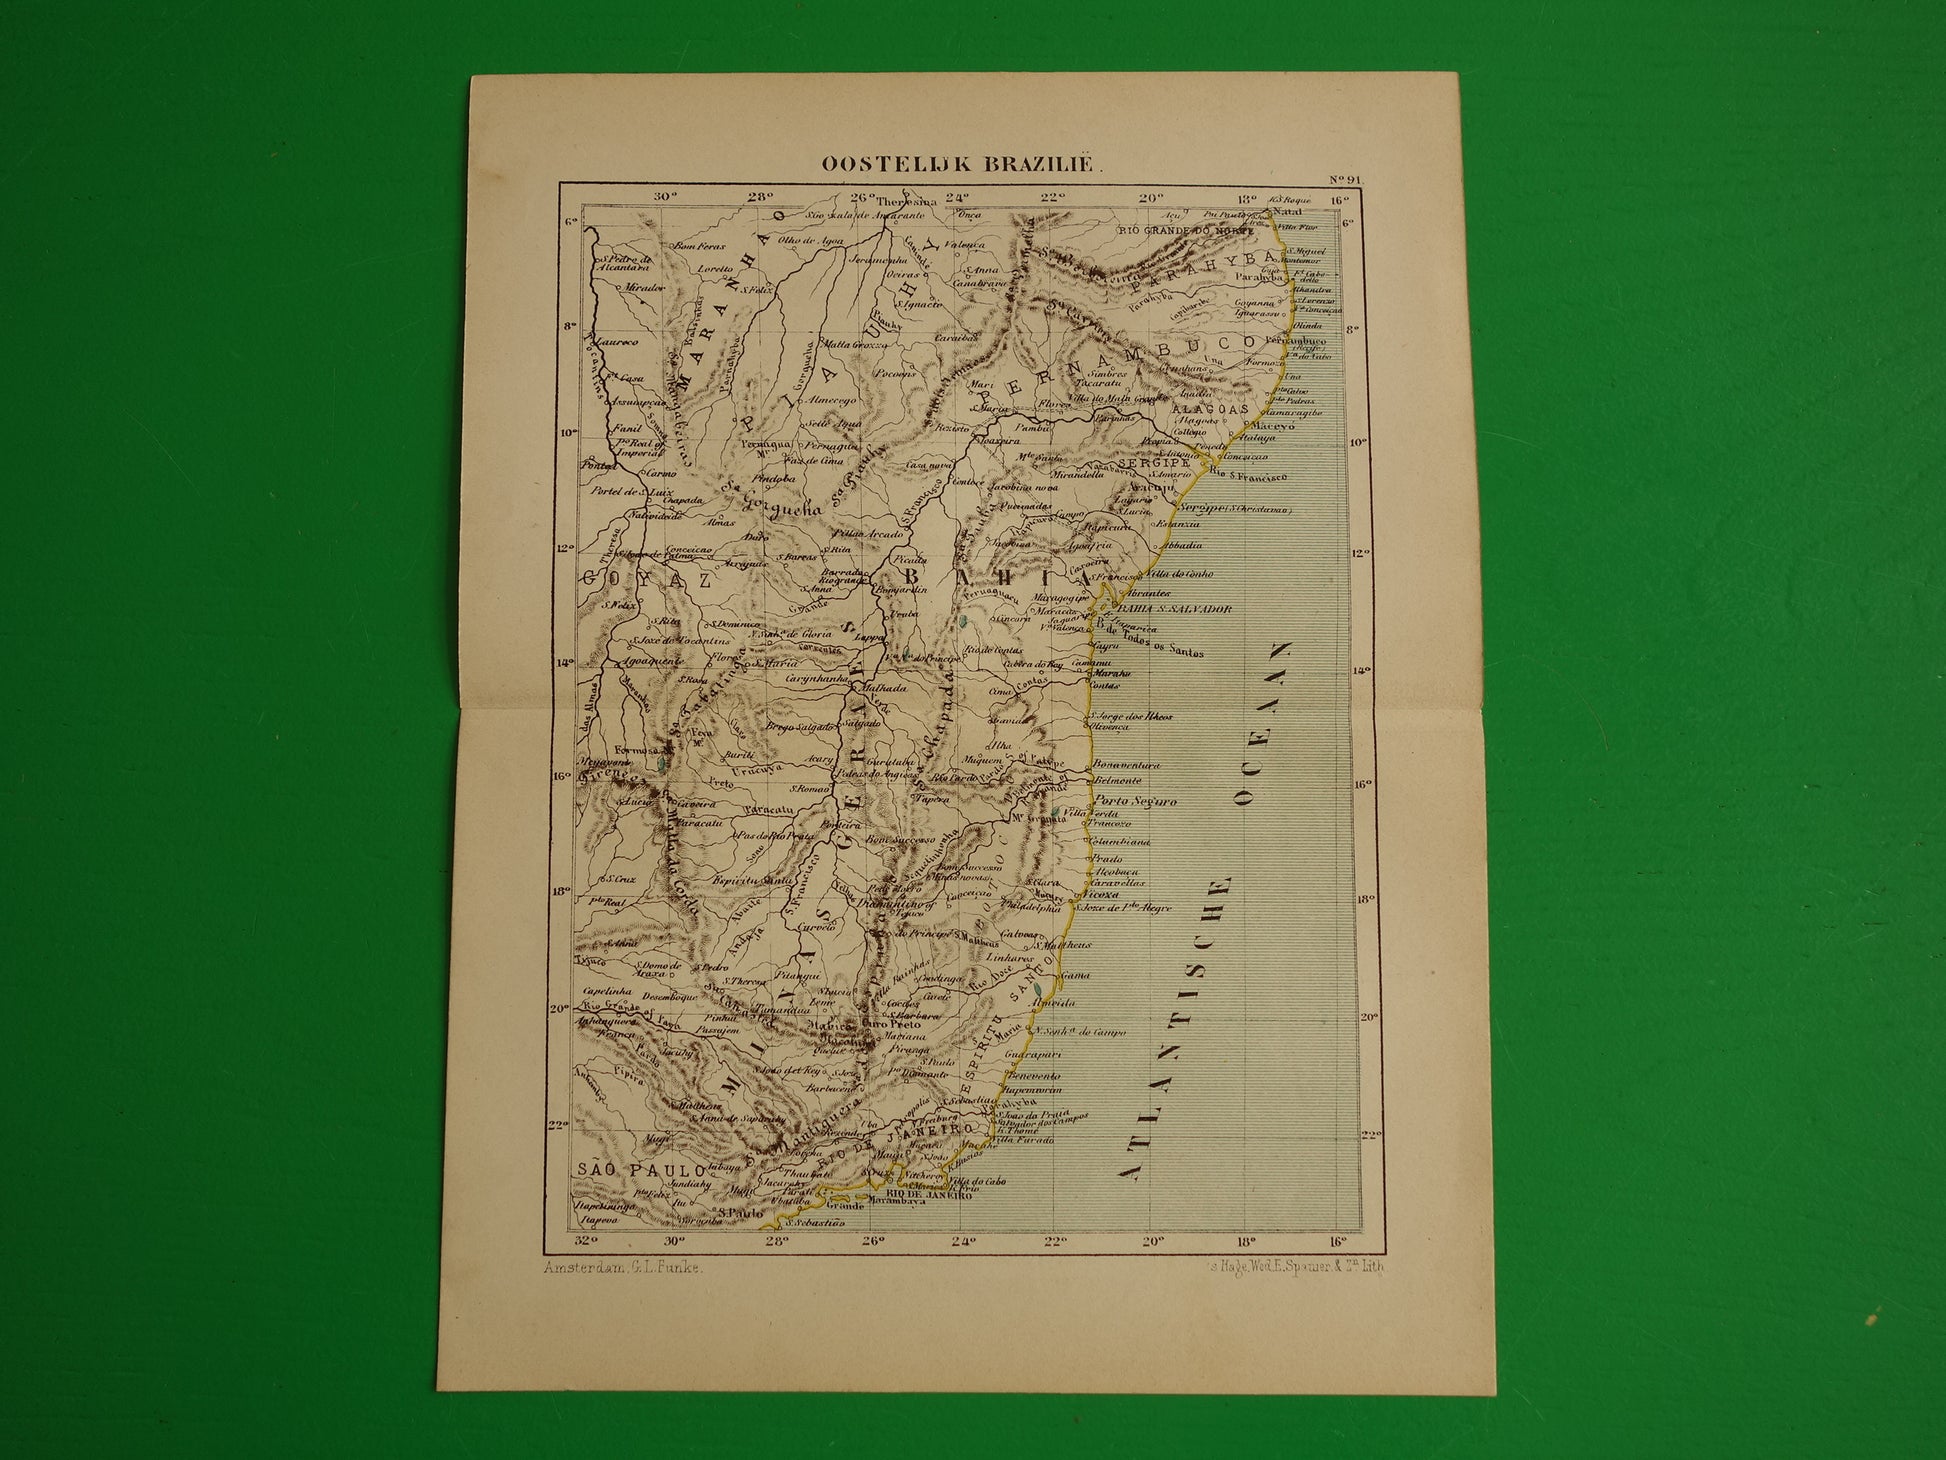 Brazilië oude landkaart oost Brazilië originele antieke Kuyper kaart uit 1882 vintage kaarten Rio de Janeiro Natal